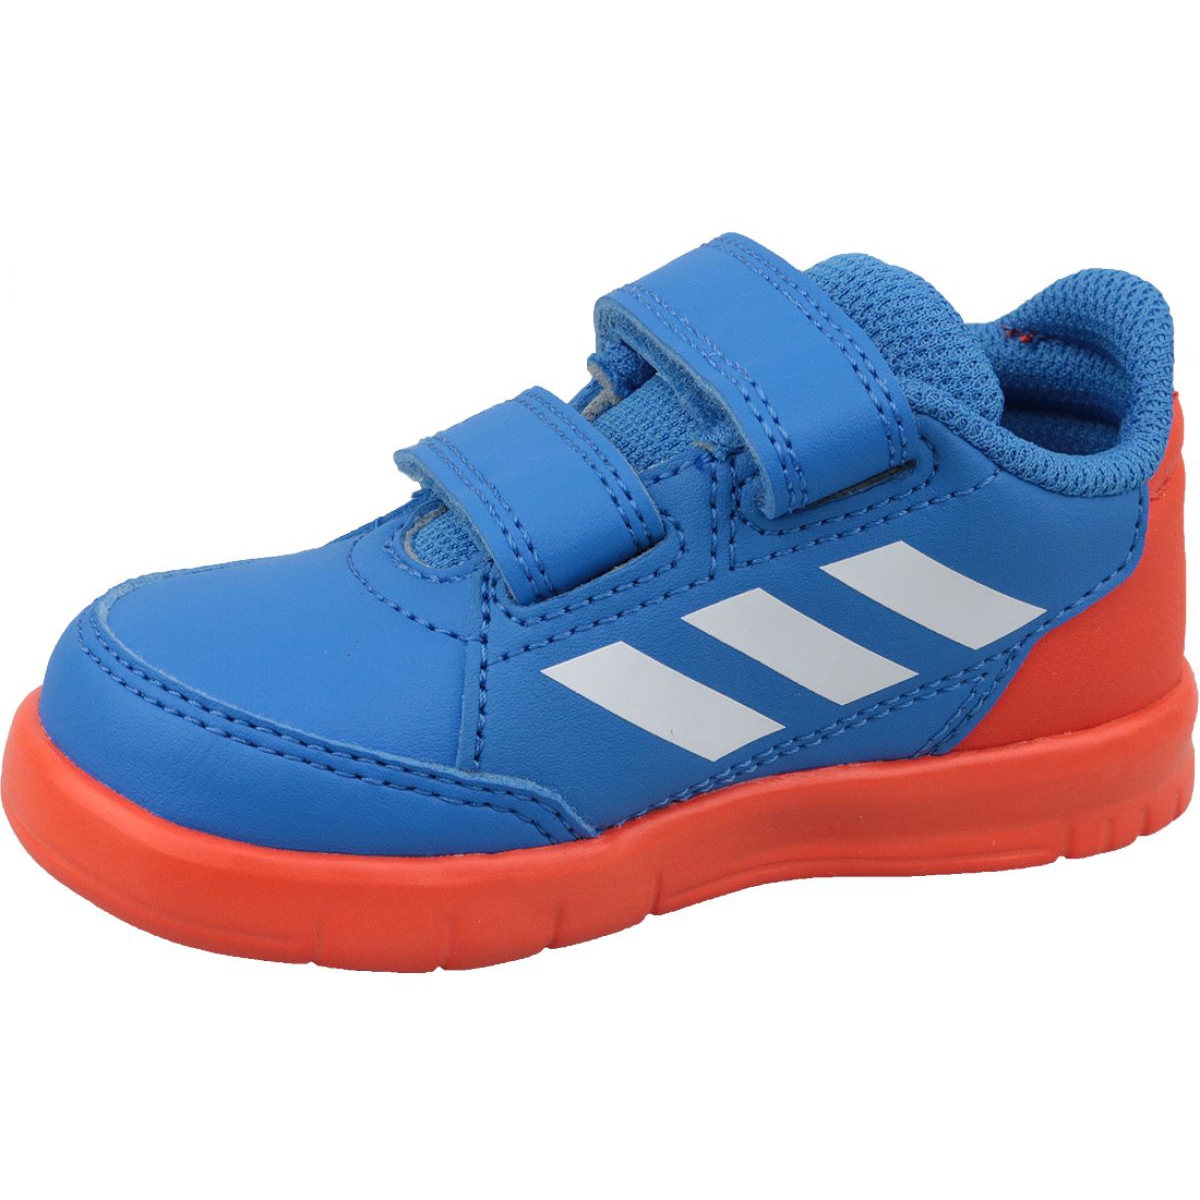 Fuera de claro Figura Adidas AltaSport Cf I D96842 blue - KeeShoes